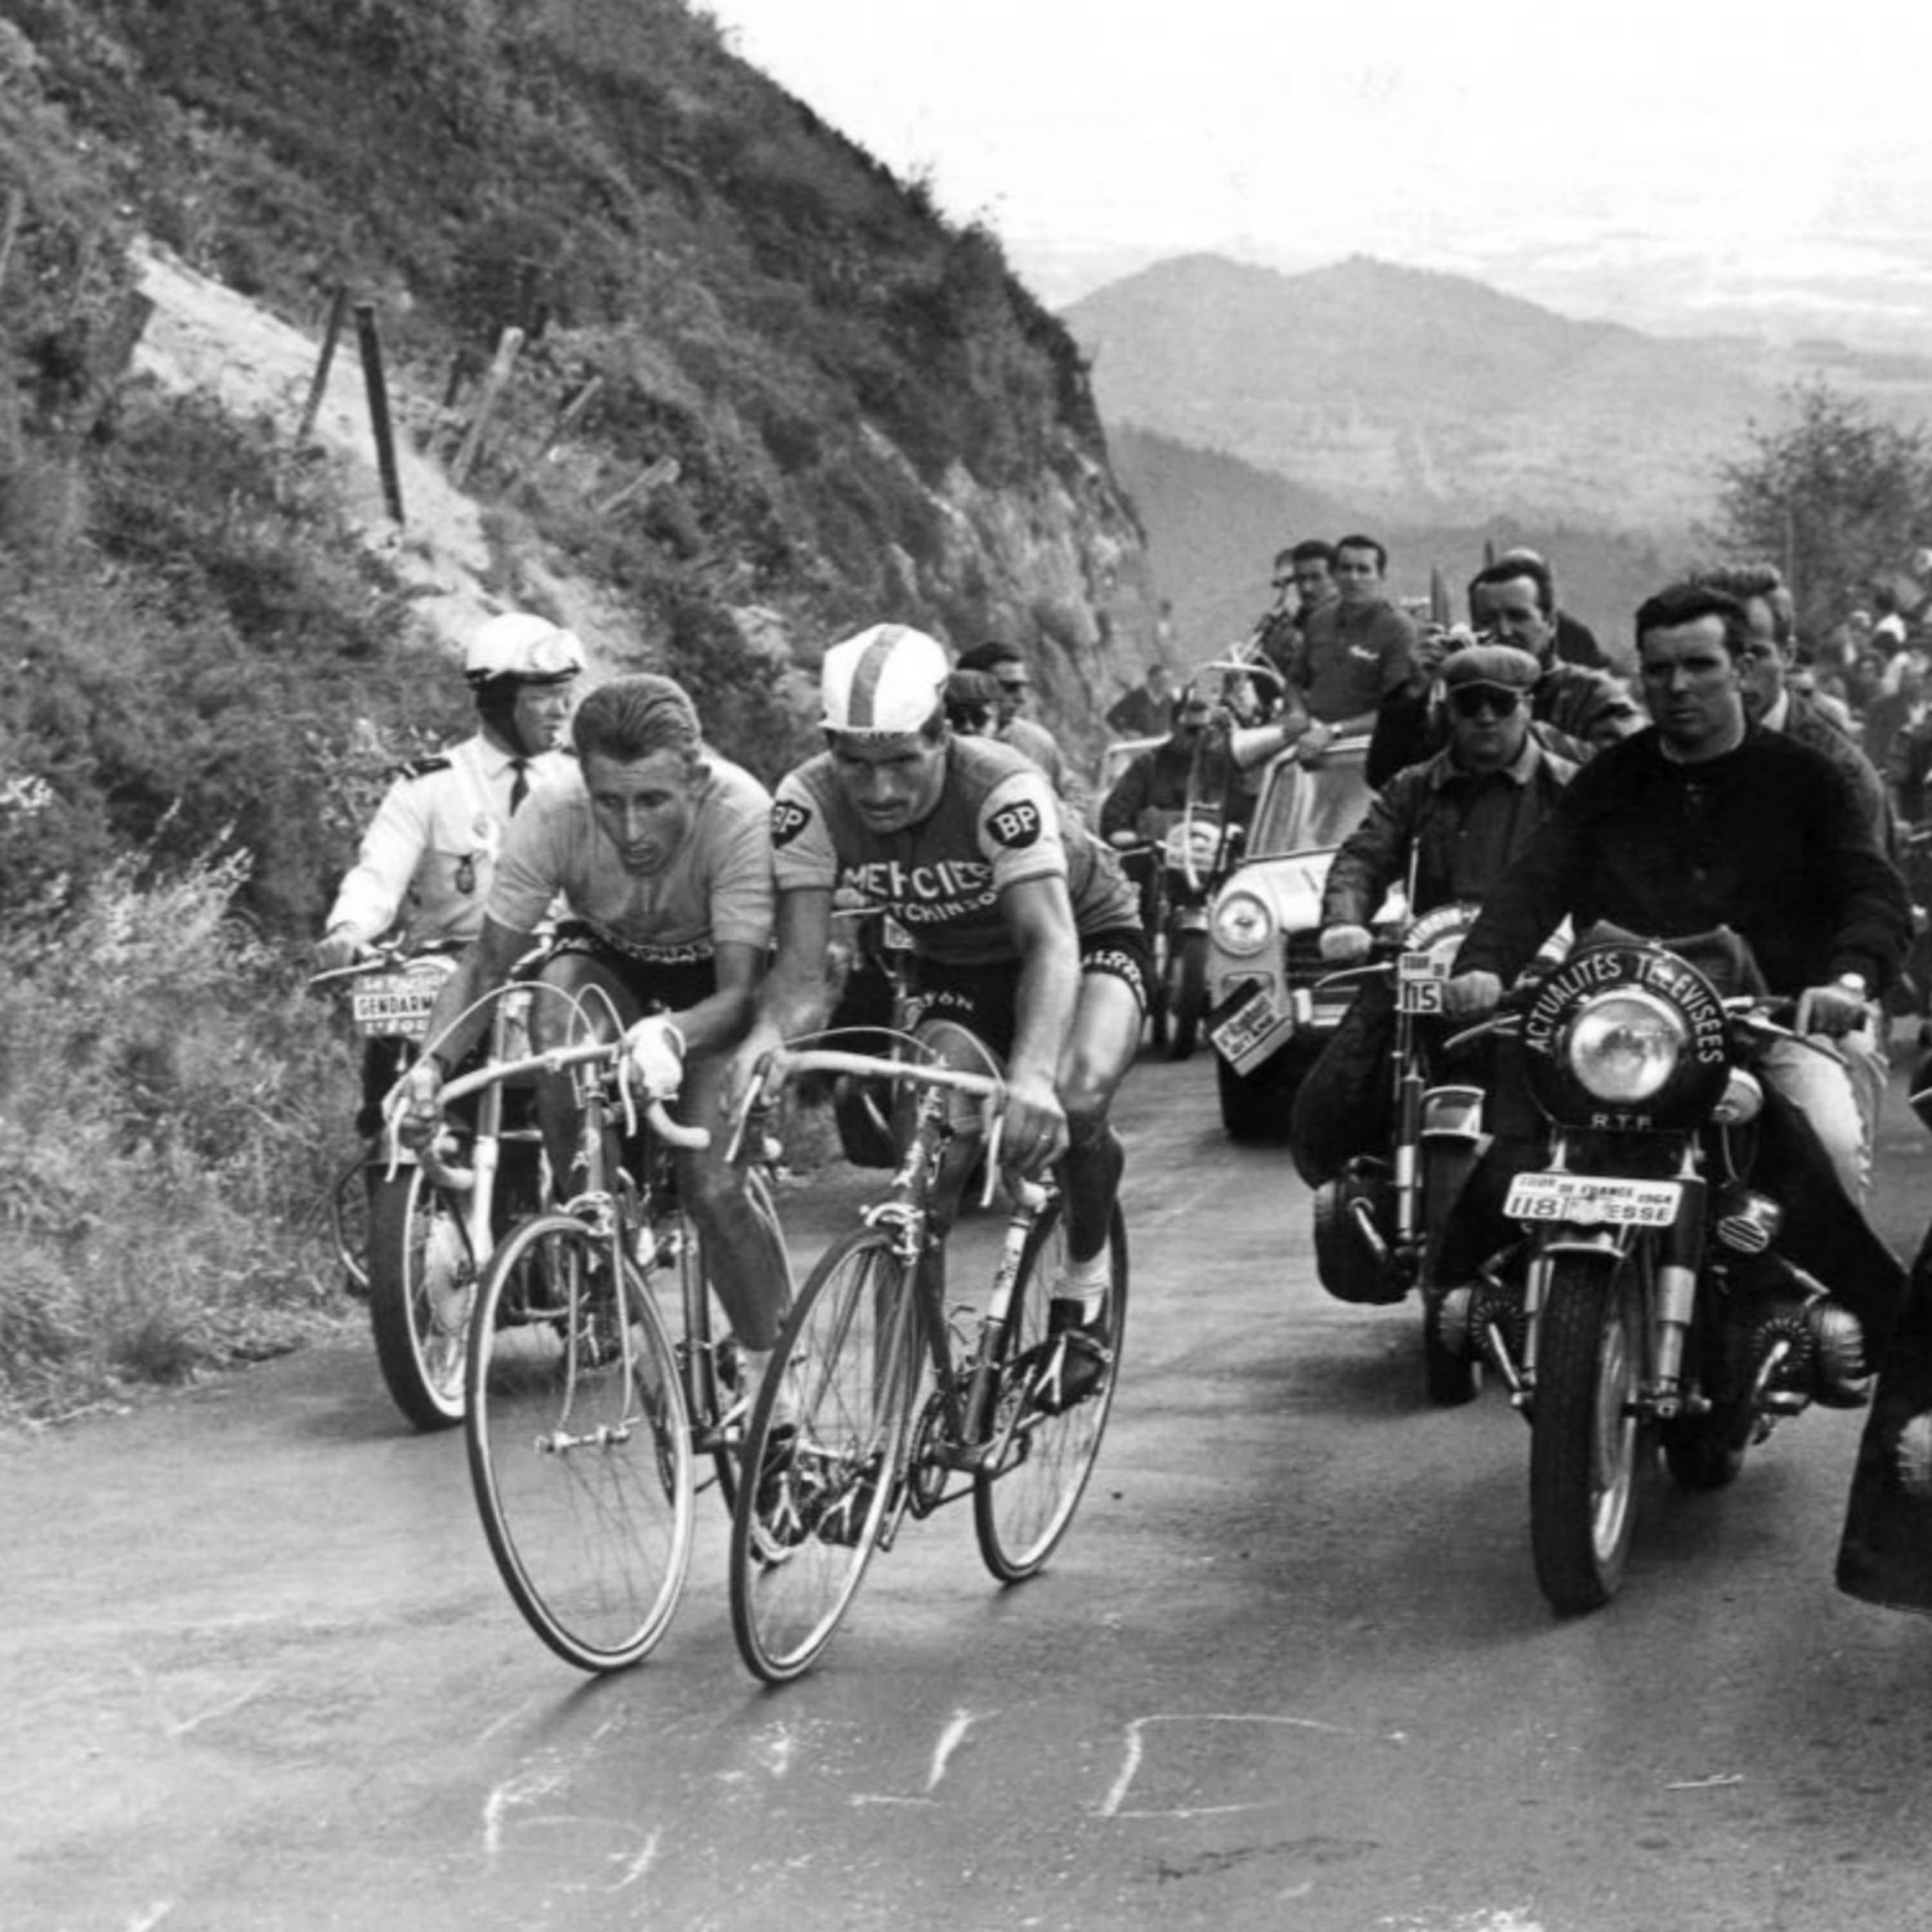 Image d'illustration épisode Tour de France 1964